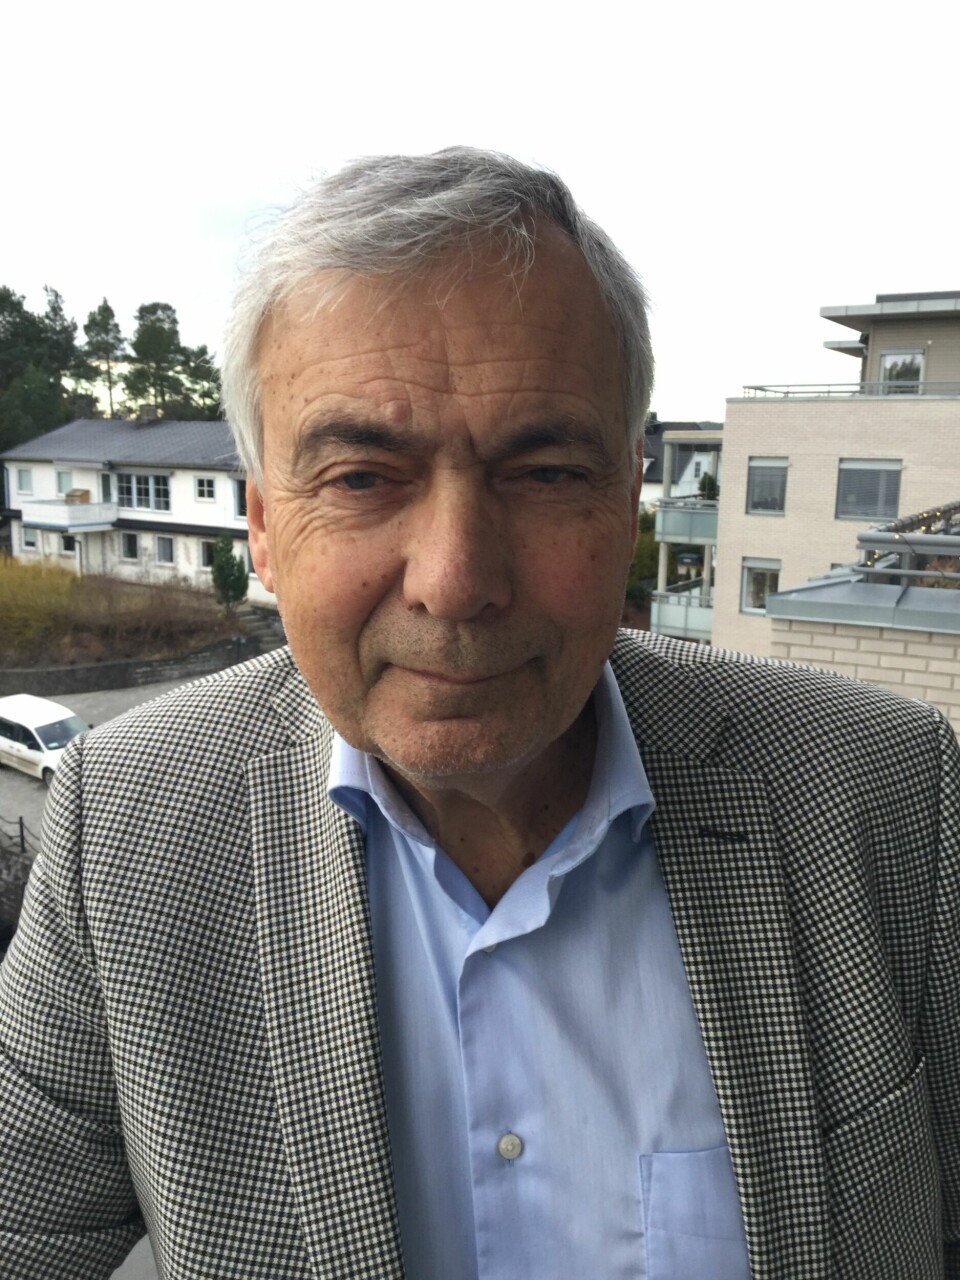 Olav Klungreseth er hovedkontakt og styreleder i selskapene Hydra Pioneer As og Hydra Salmon Company. Foto: privat.